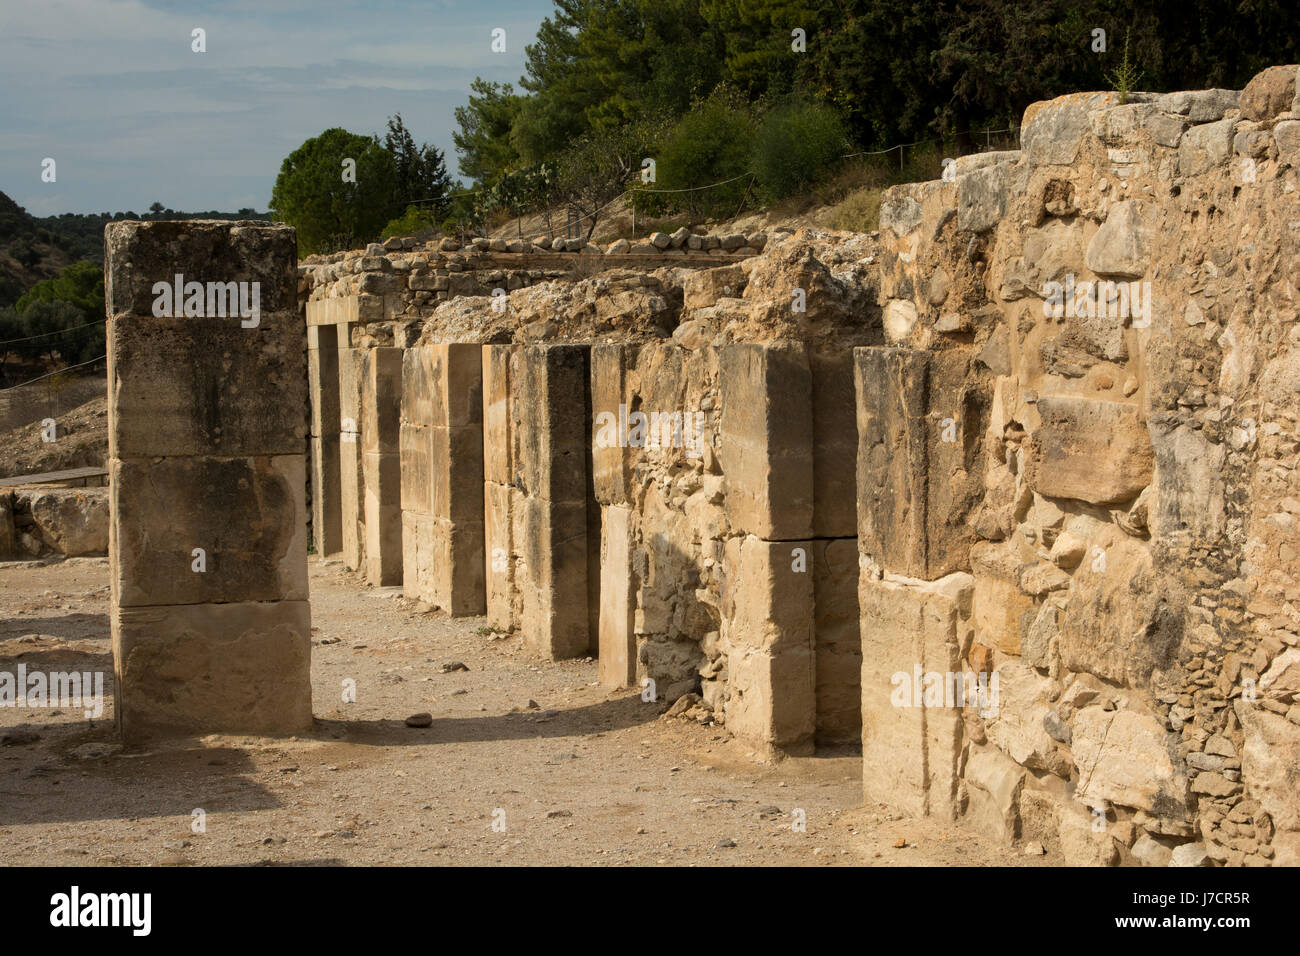 Phaistos era un palacio minoico y ciudad central meridional iin Creta con asentamientos, comenzando alrededor de 4000 A.C. y duró alrededor de 4000 años. Foto de stock